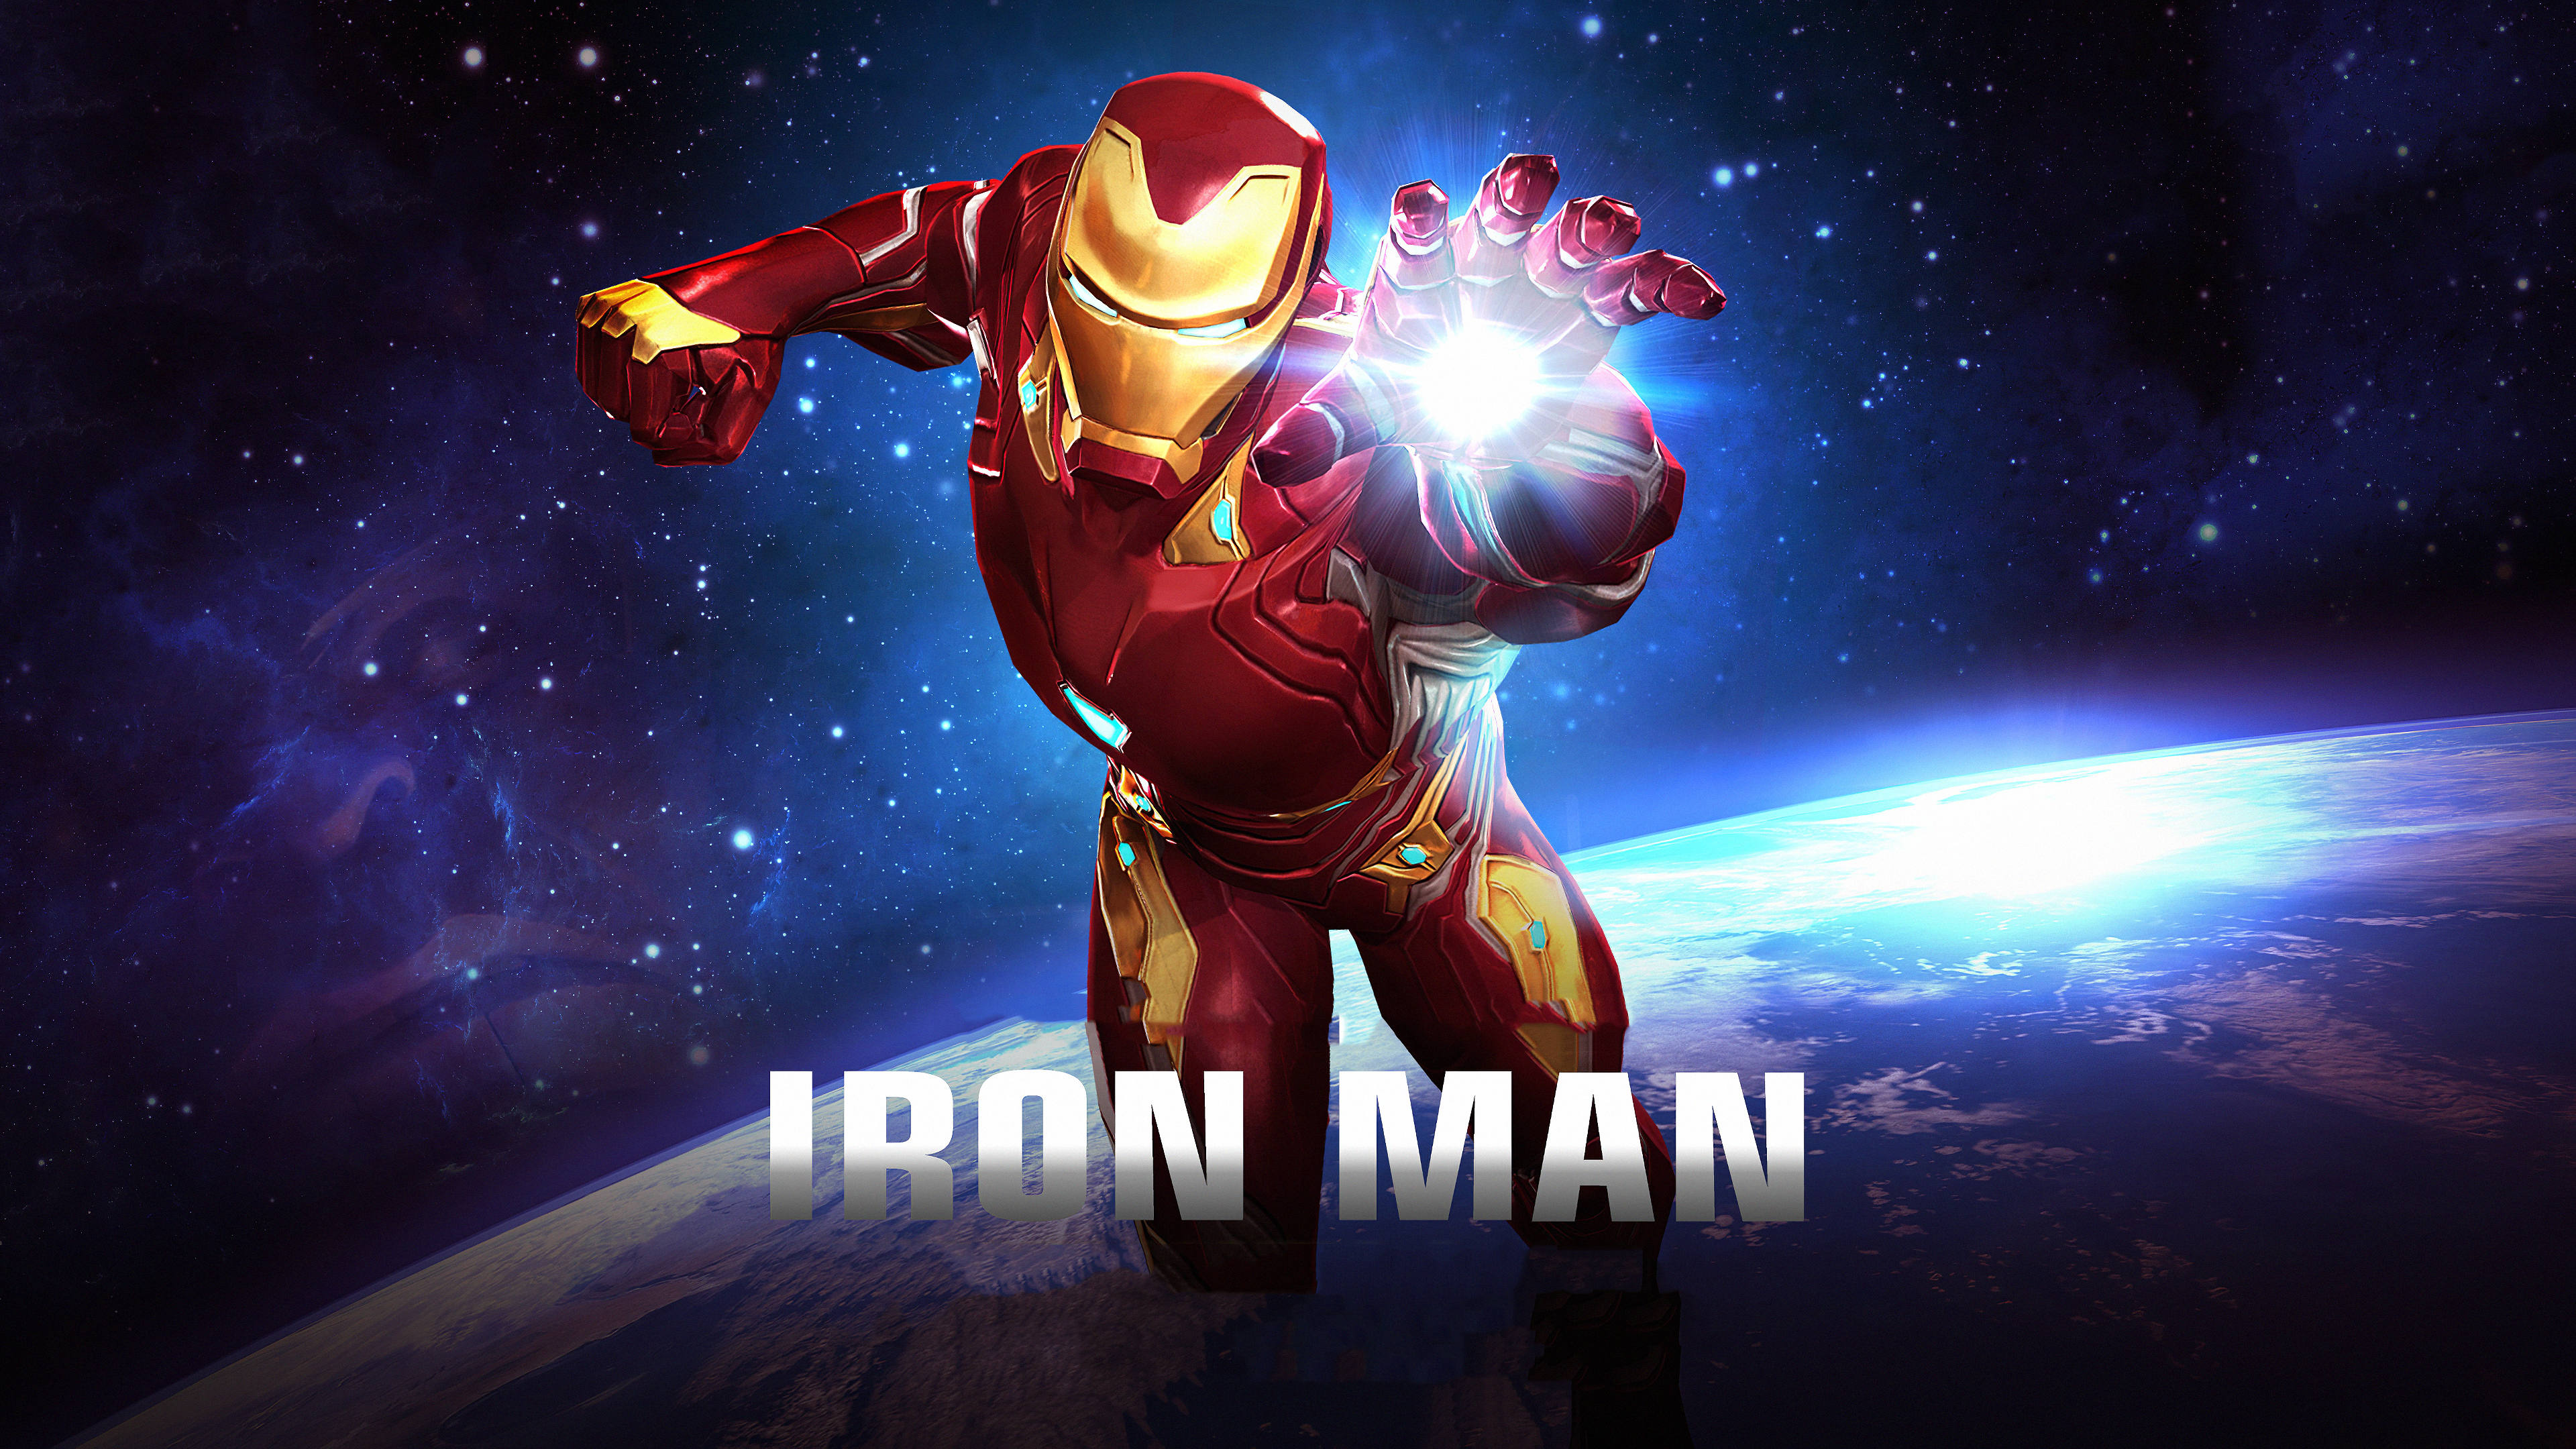 Iron Man Full Hd Wallpaper For Mobile